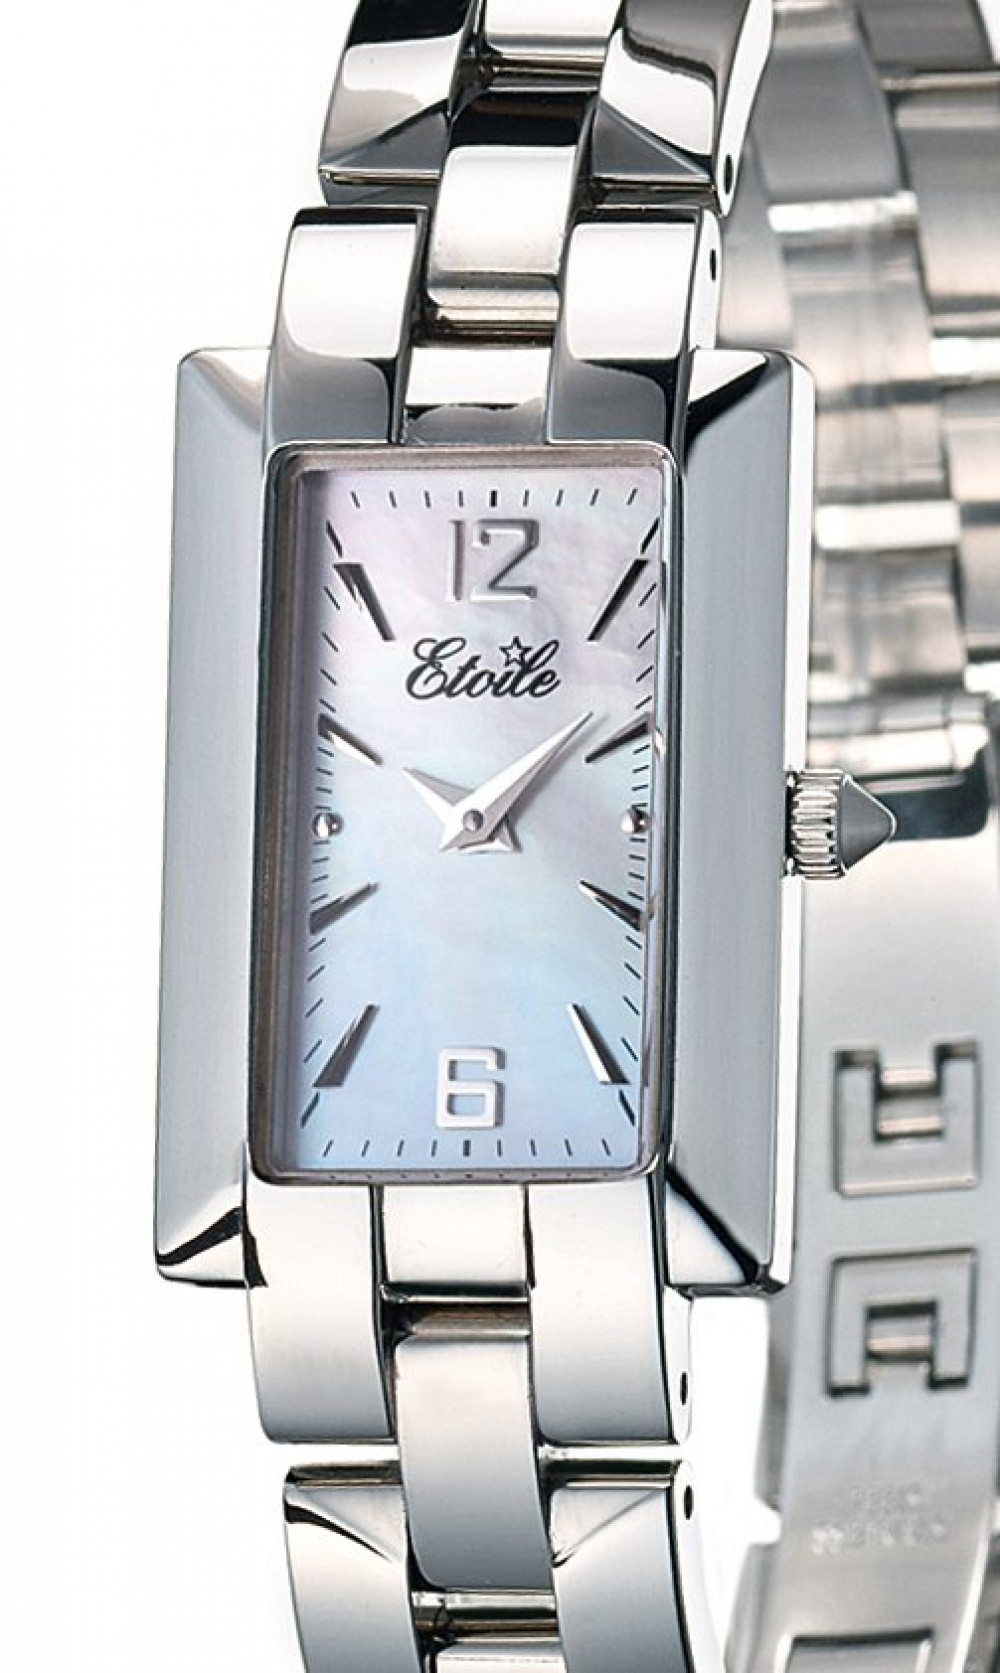 Zegarek firmy Etoile, model Lady